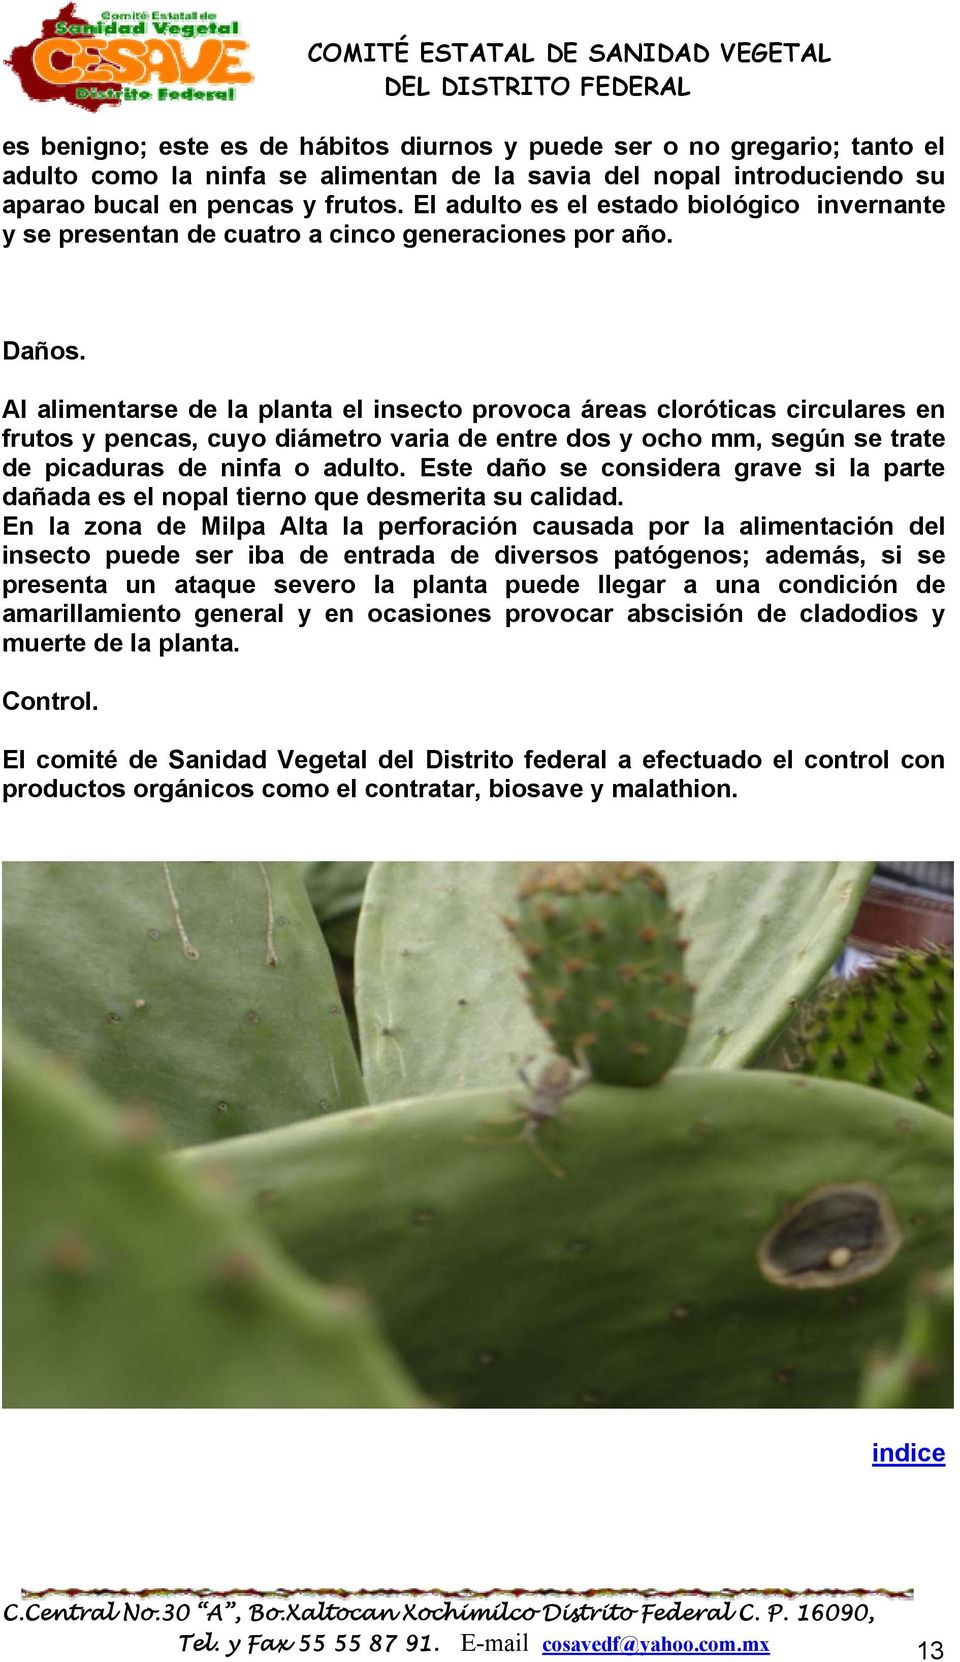 Al alimentarse de la planta el insecto provoca áreas cloróticas circulares en frutos y pencas, cuyo diámetro varia de entre dos y ocho mm, según se trate de picaduras de ninfa o adulto.